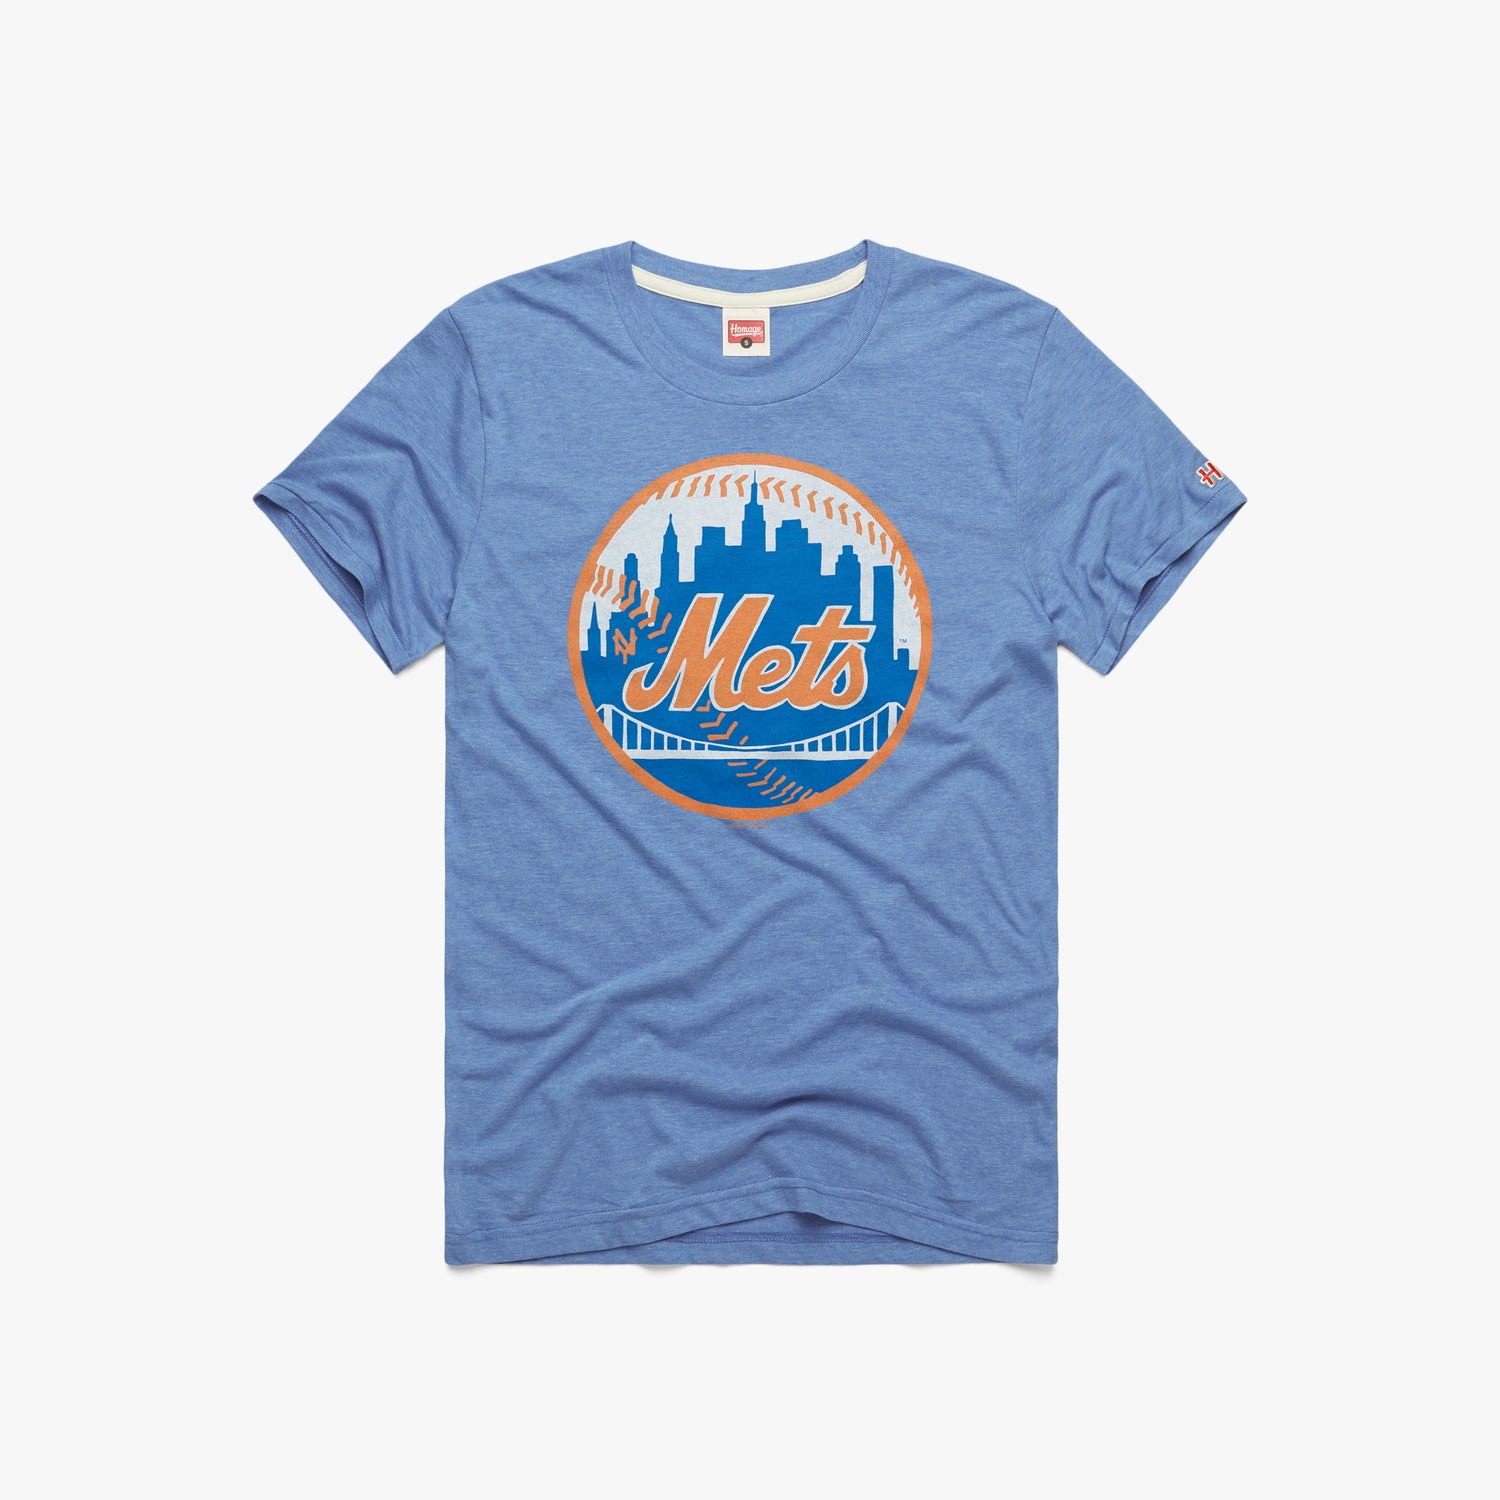 homage merch New York Mets '81 Sweatshirt - Clgtee